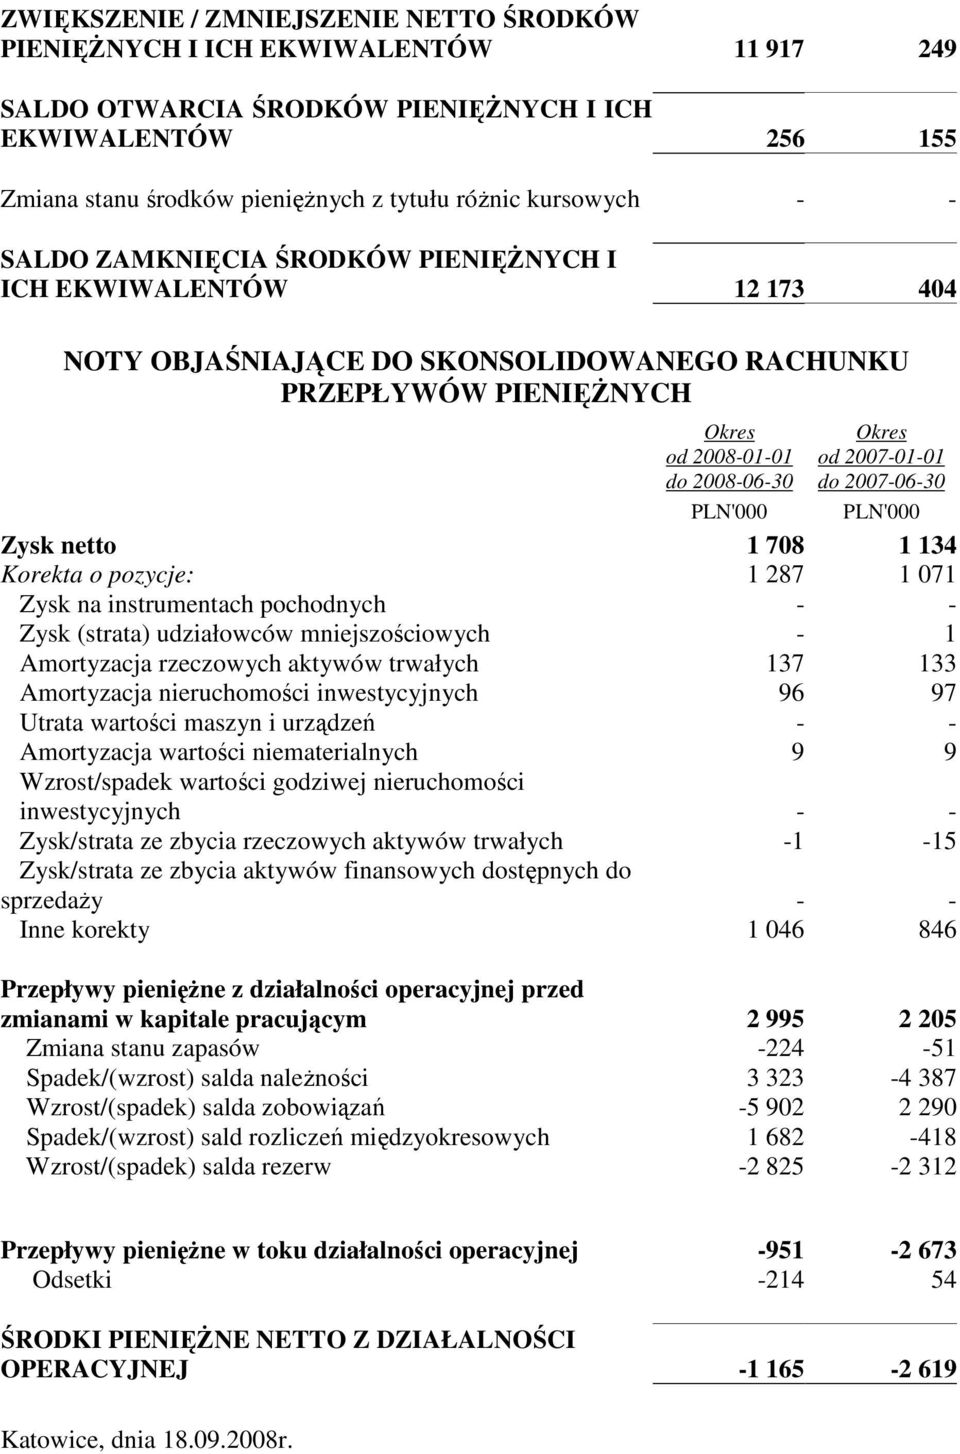 od 2007-01-01 do 2007-06-30 PLN'000 Zysk netto 1 708 1 134 Korekta o pozycje: 1 287 1 071 Zysk na instrumentach pochodnych - - Zysk (strata) udziałowców mniejszościowych - 1 Amortyzacja rzeczowych